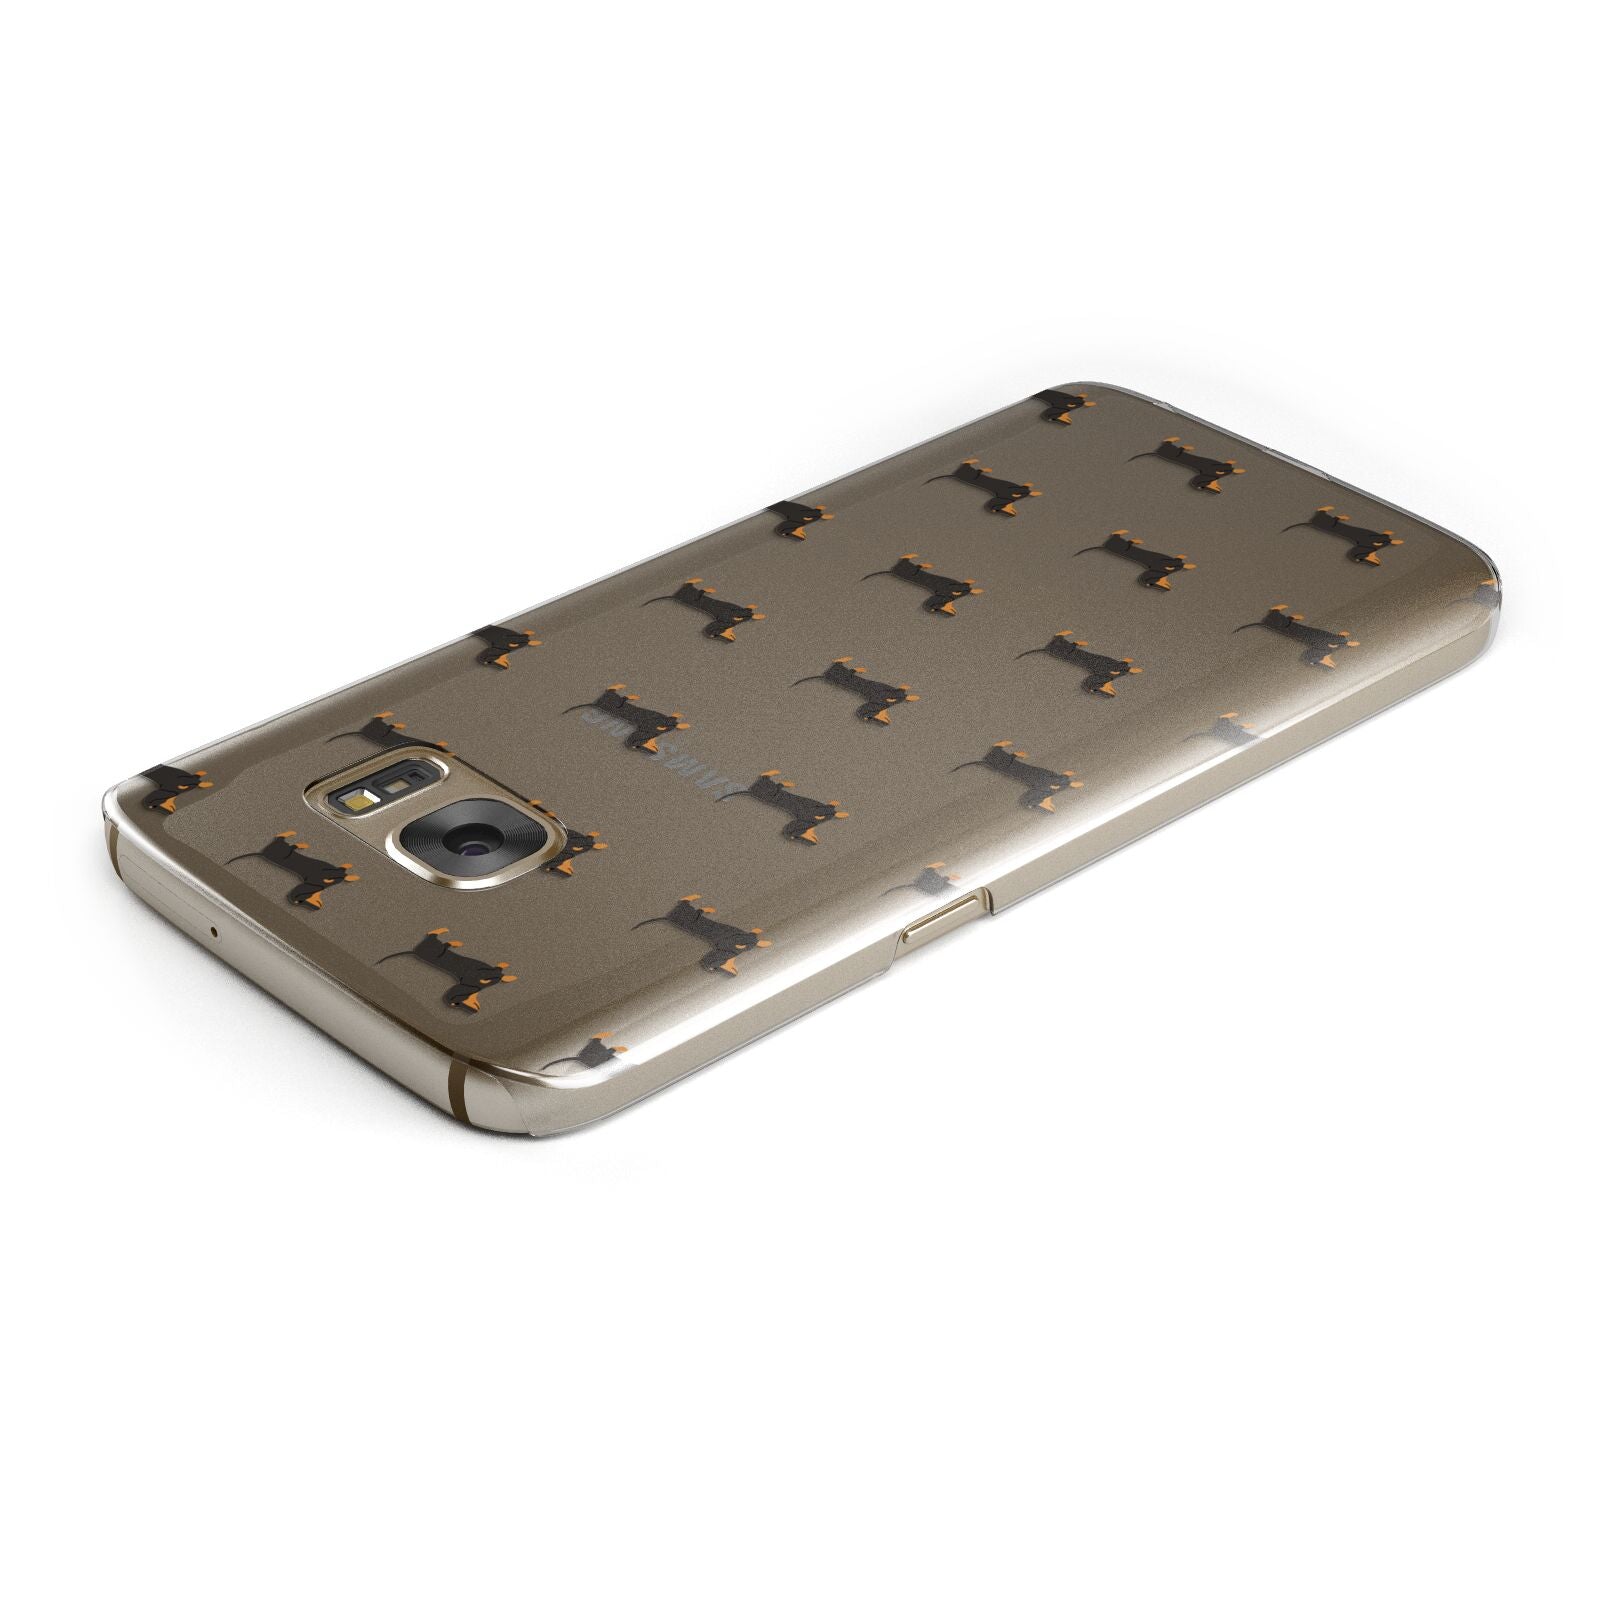 Dachshund Samsung Galaxy Case Top Cutout